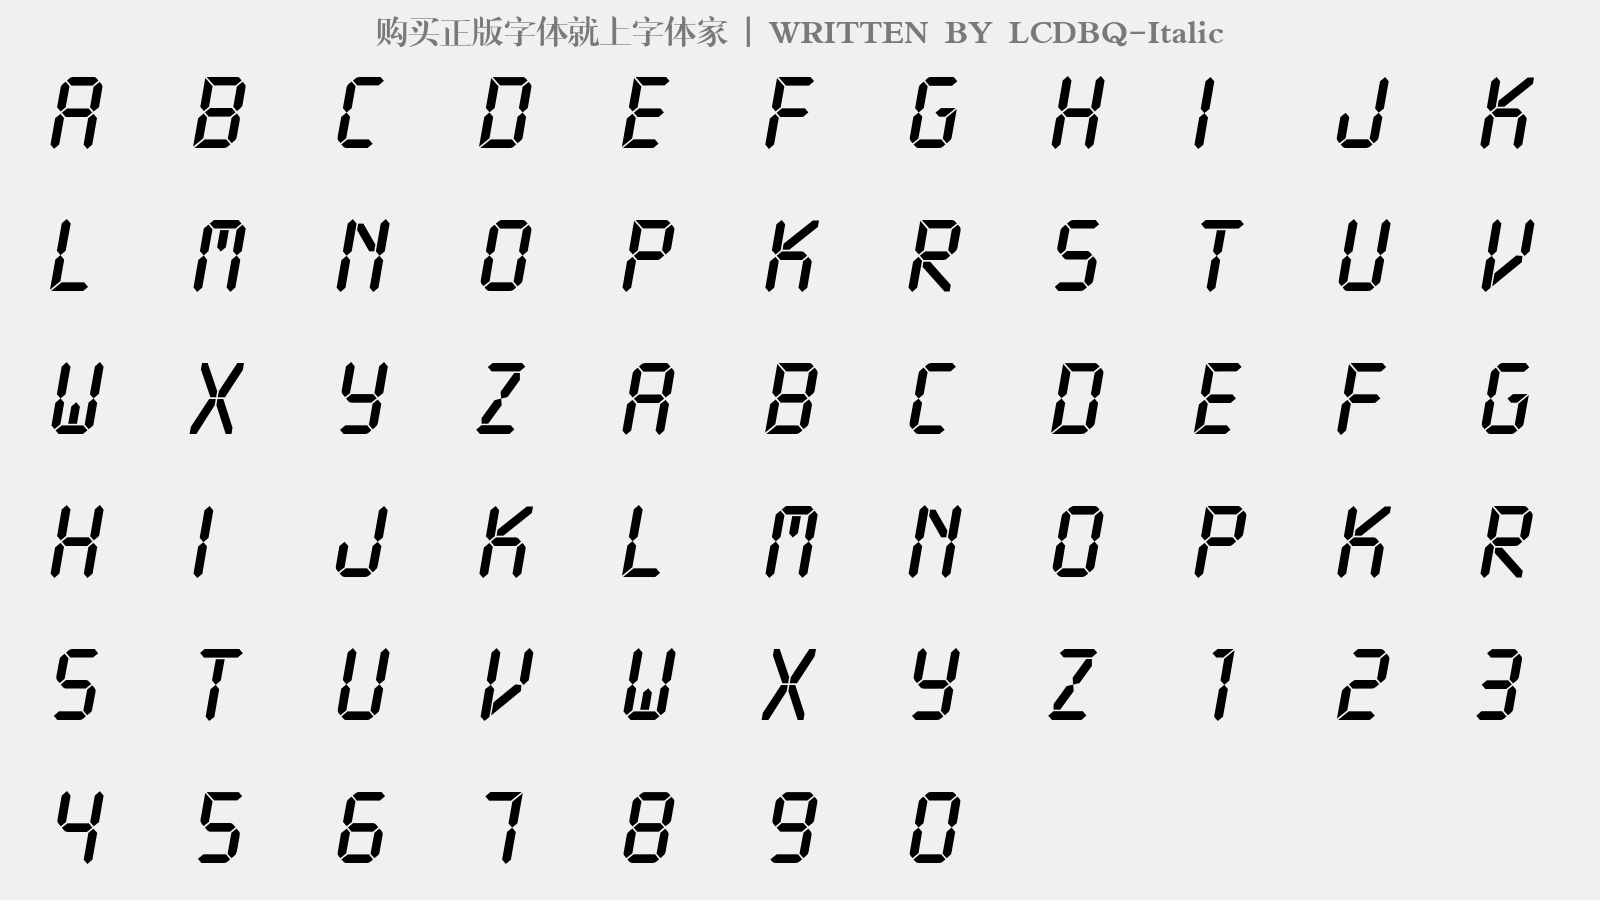 LCDBQ-Italic - 大写字母/小写字母/数字